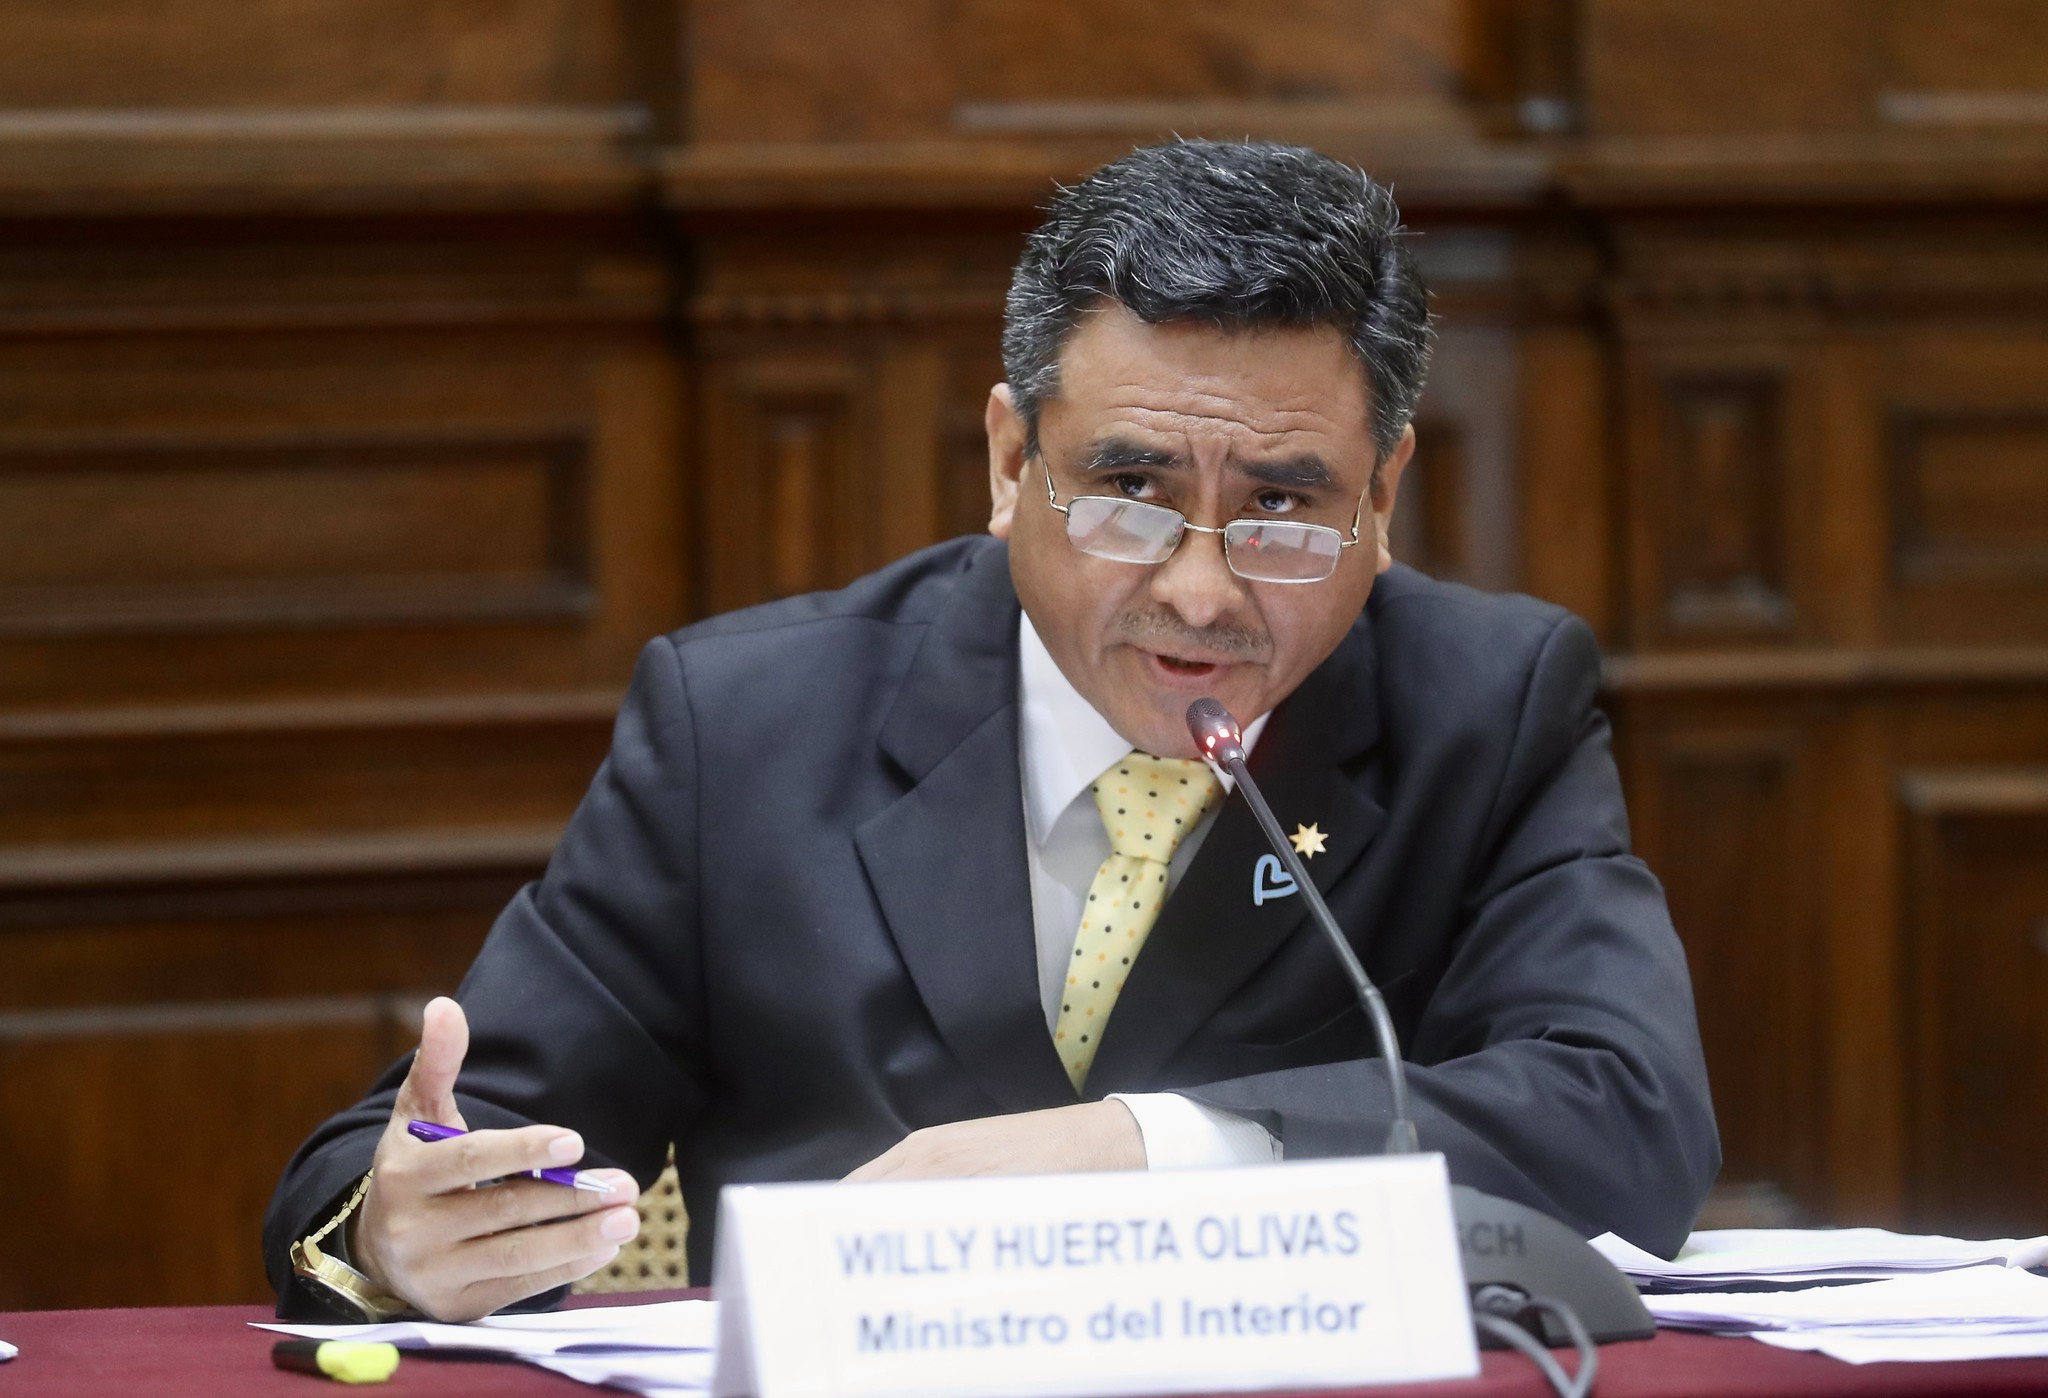 Willy Huerta: Presentan moción de censura contra el ministro del Interior -  Infobae